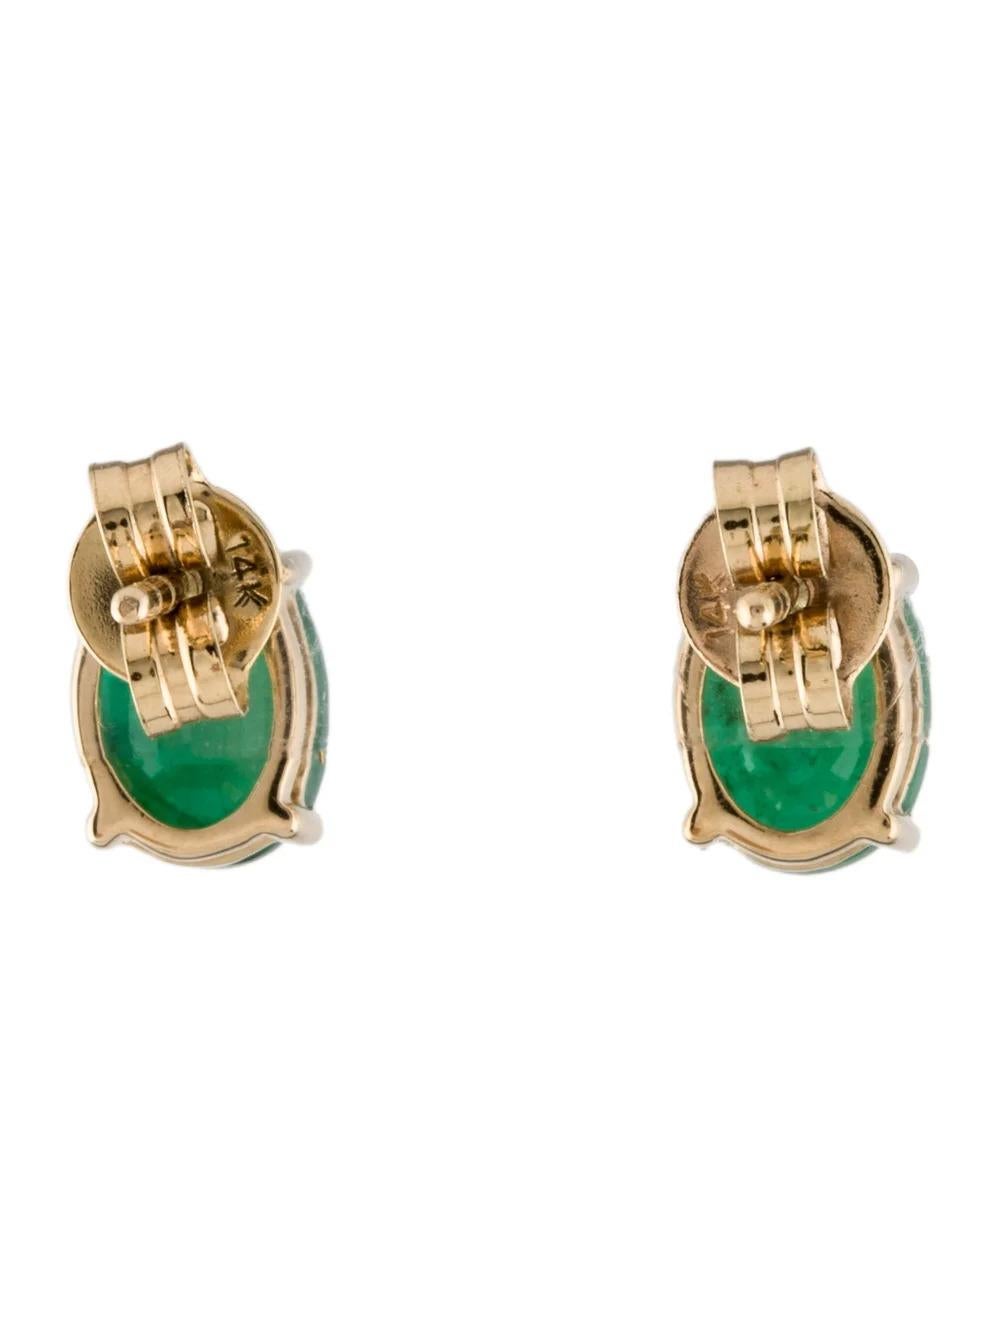 Oval Cut 14K Emerald Stud Earrings 1.71ctw Vintage Style Fine Statement Jewelry, Timeless